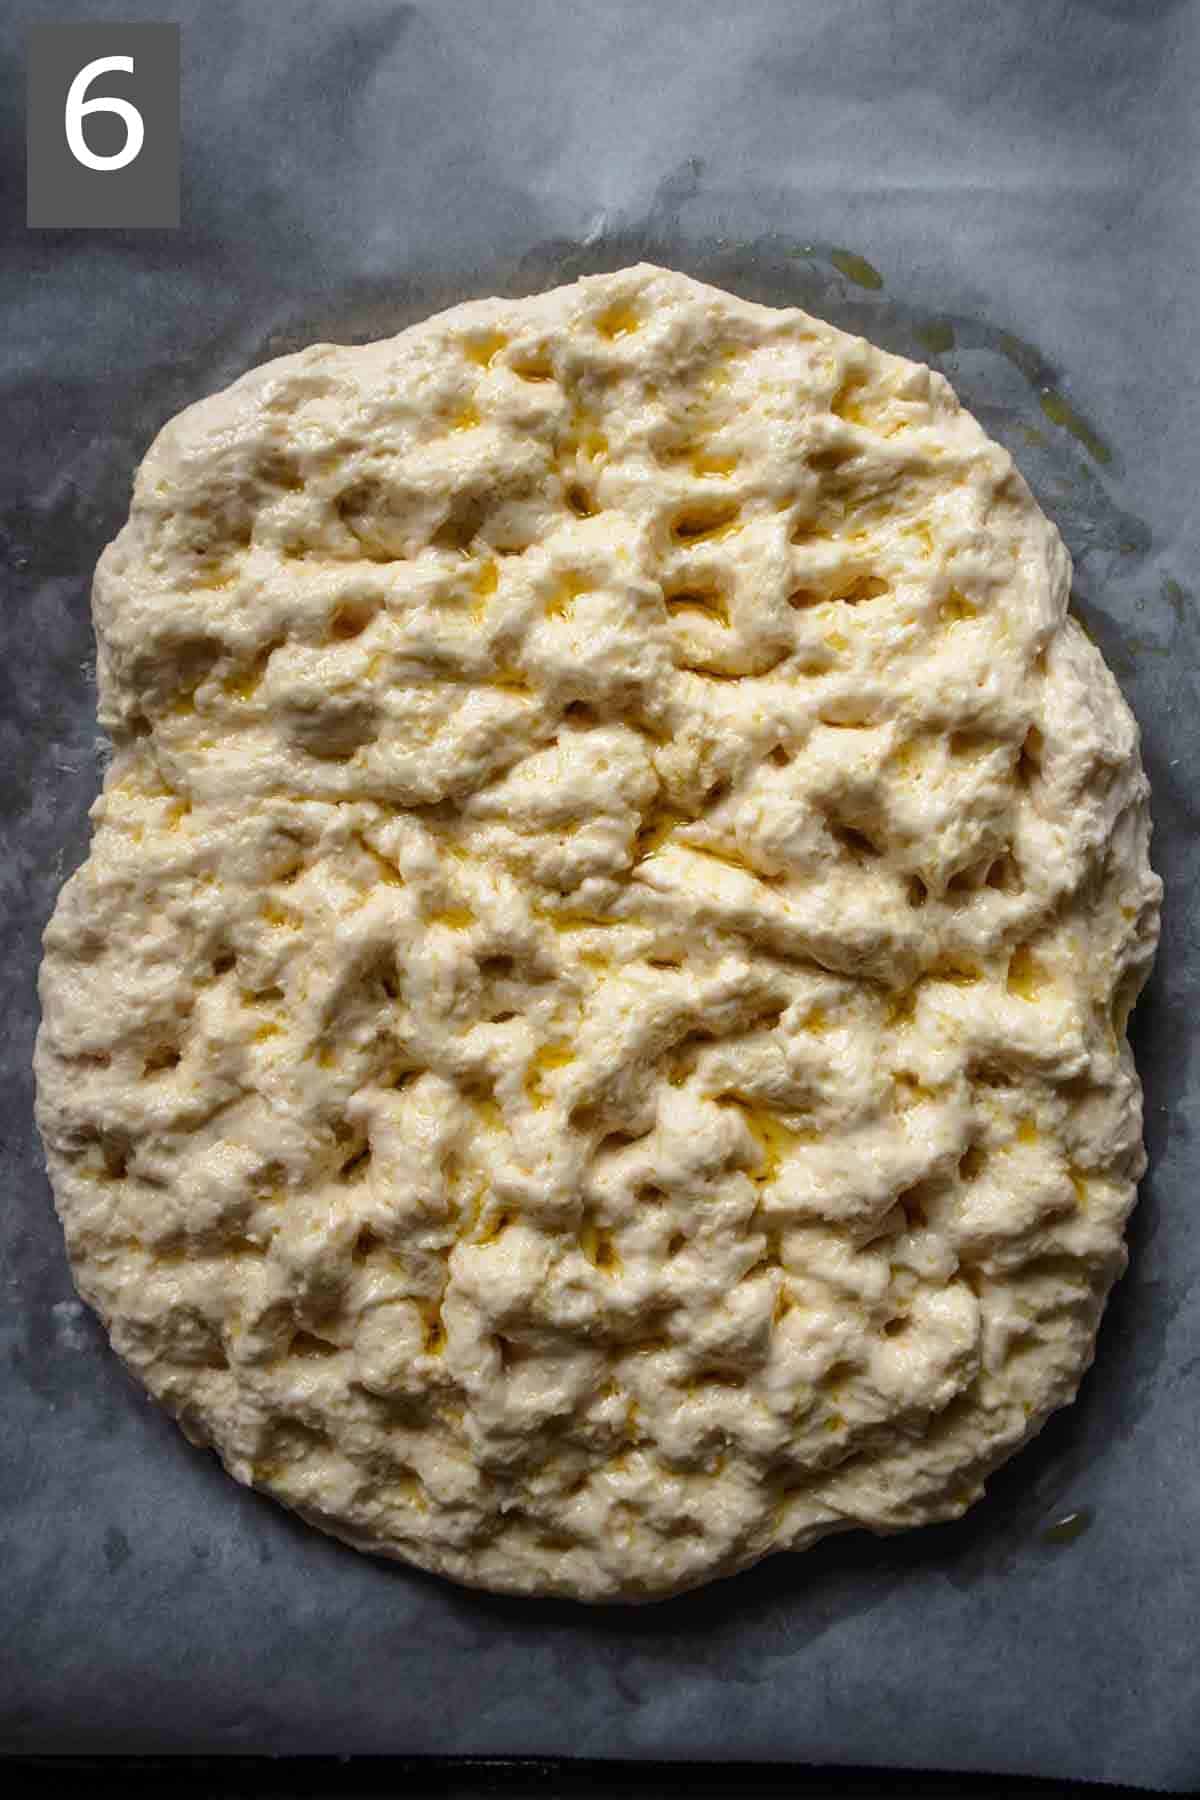 Dimpled focaccia dough